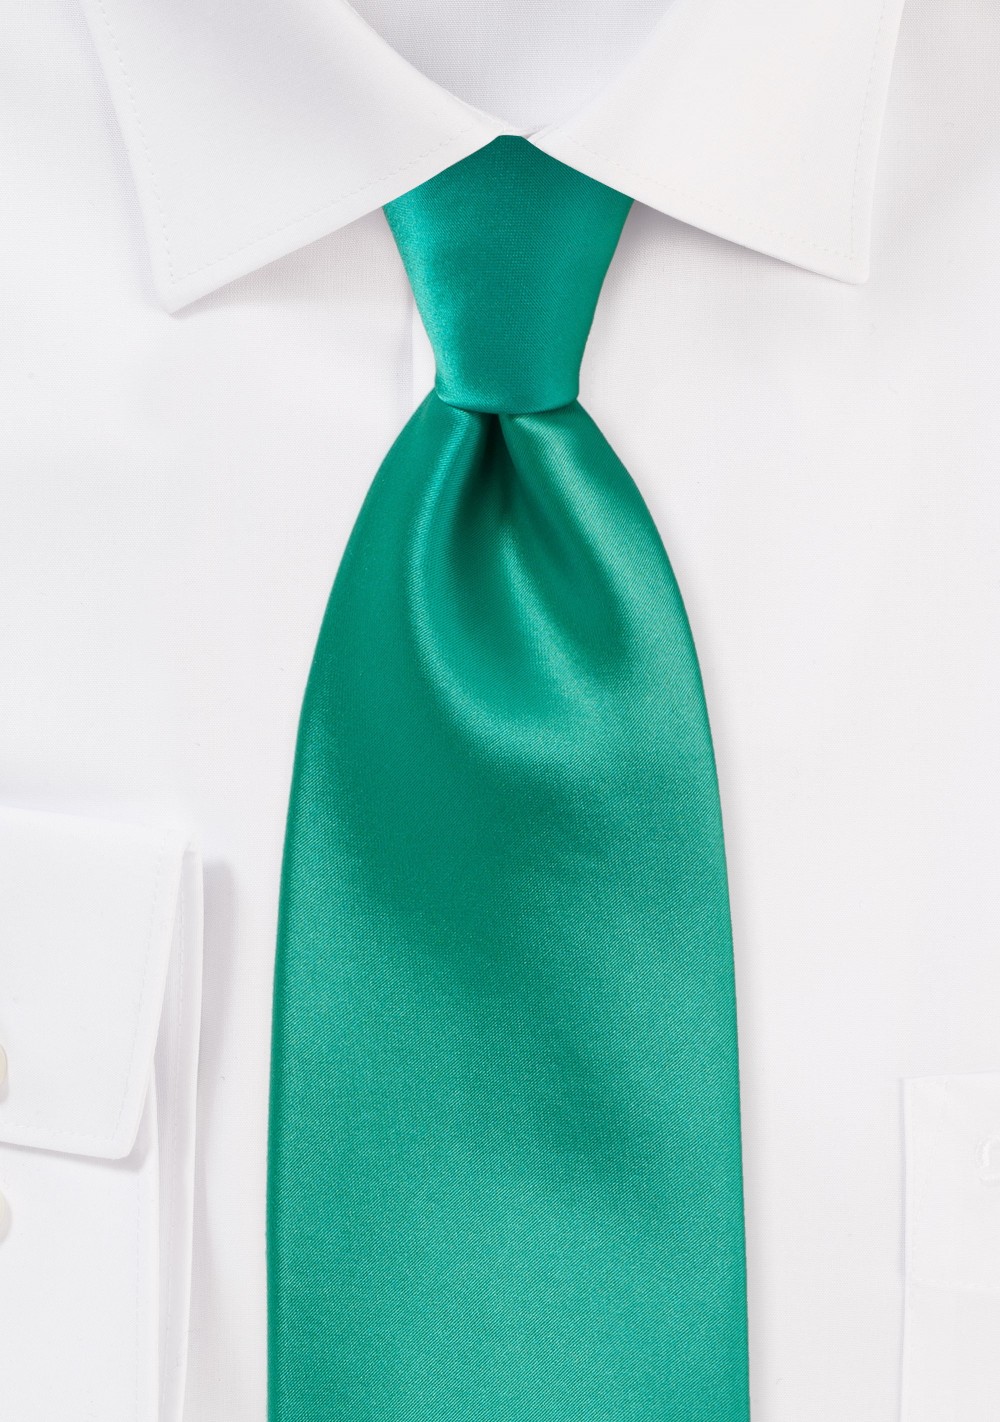 Bright Jade Green Necktie